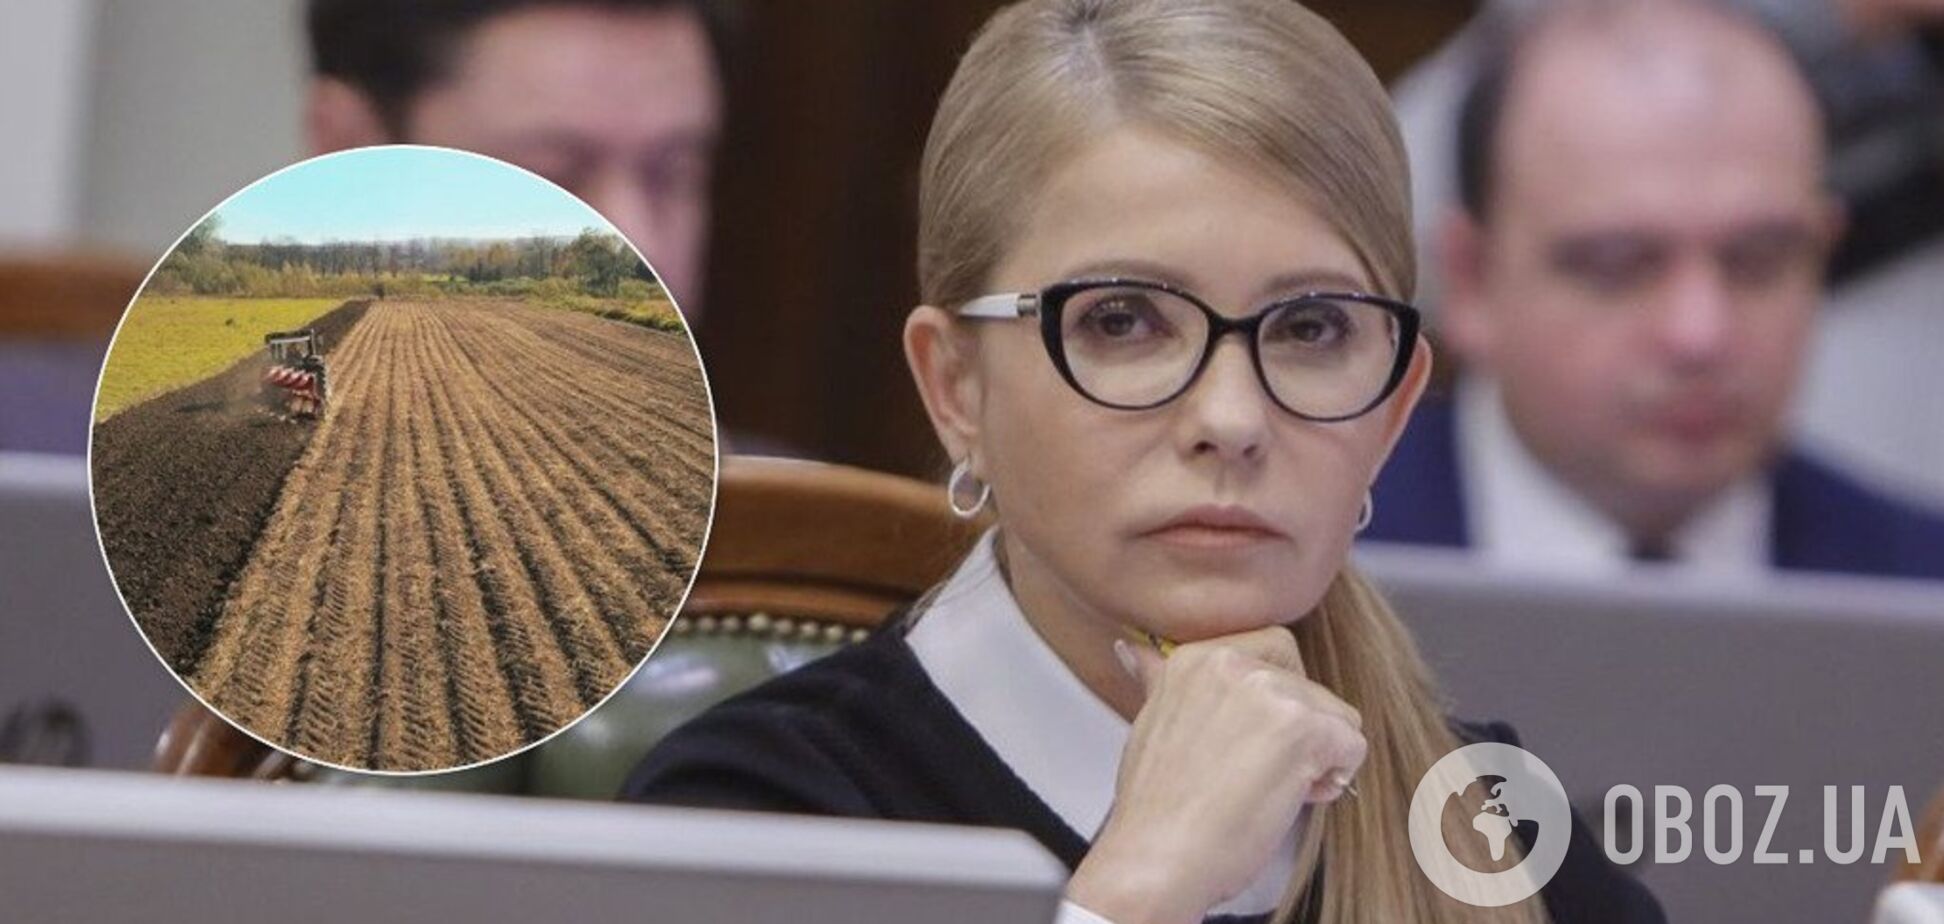 Загроза національній безпеці: Тимошенко закликала до референдуму із земельного питання